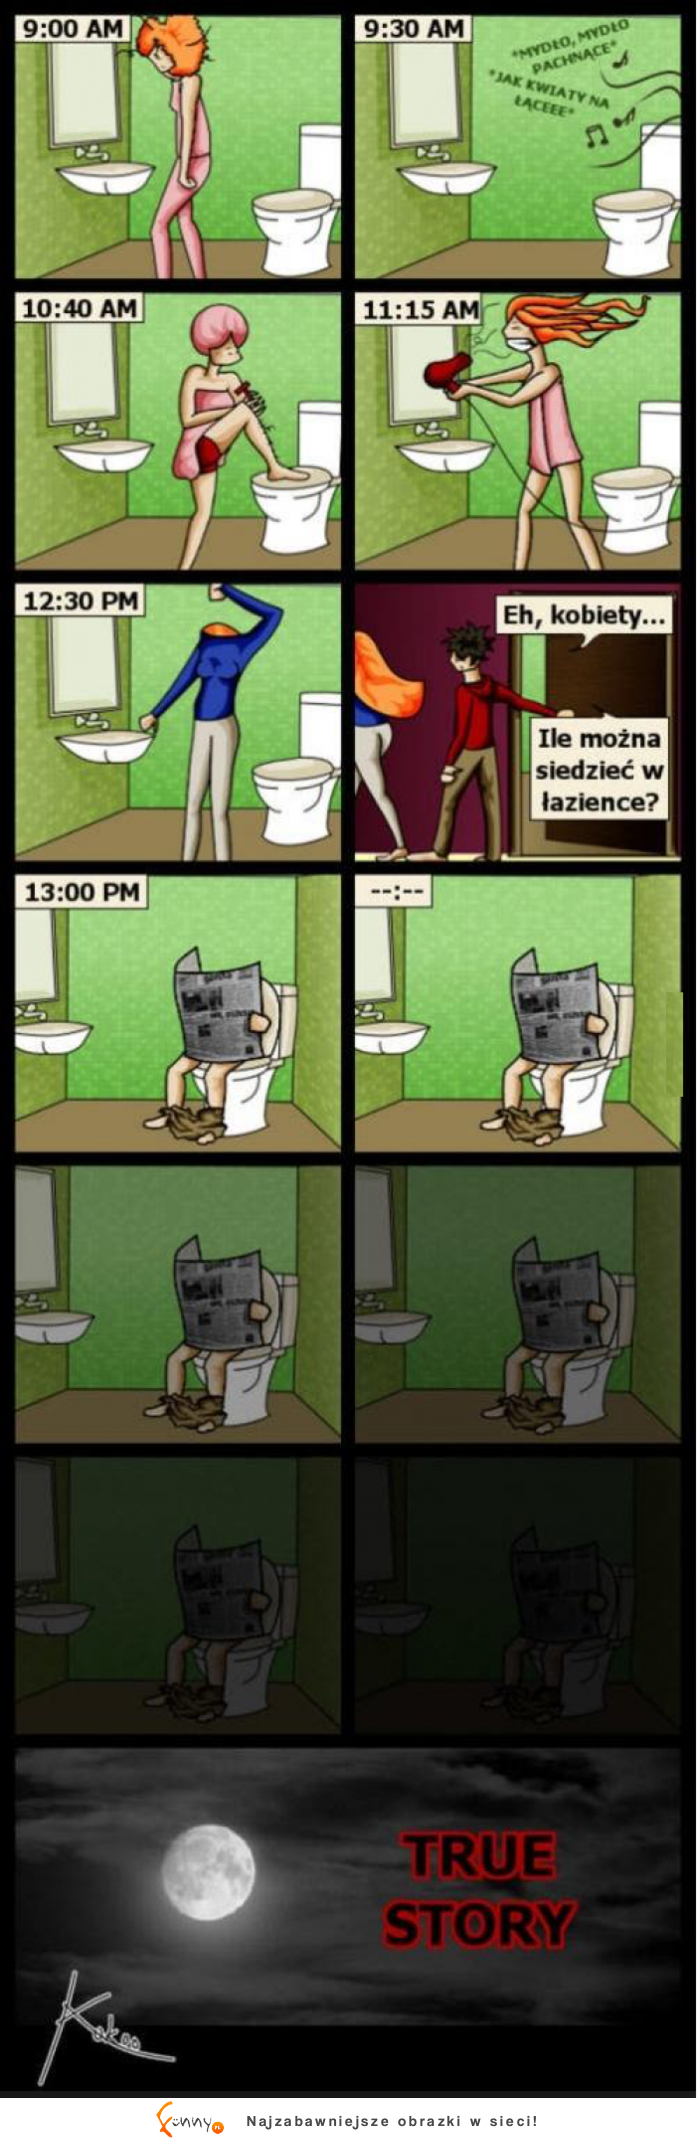 Siedzenie w toalecie - KOBIETY vs. MĘŻCZYŹNI :)